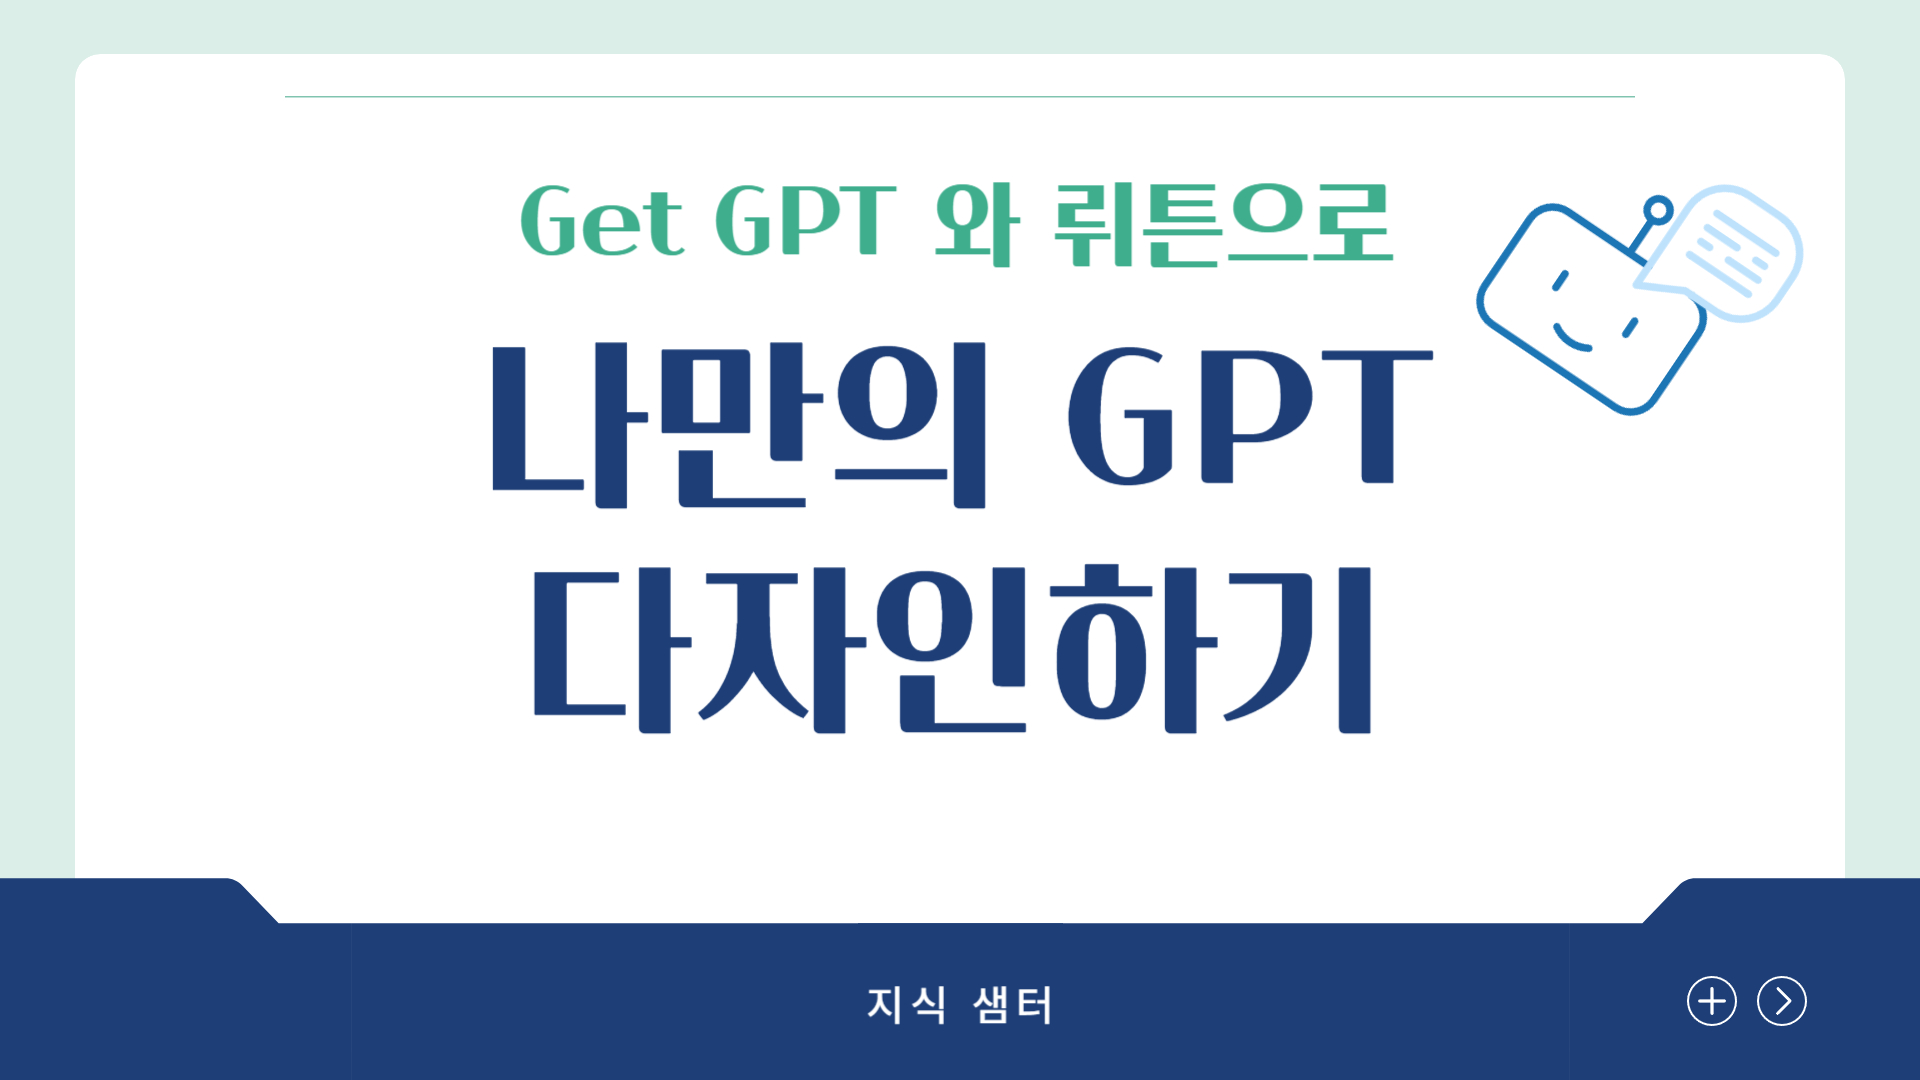 Get GPT, 뤼튼으로 나만의 GPT 만들기(3기)